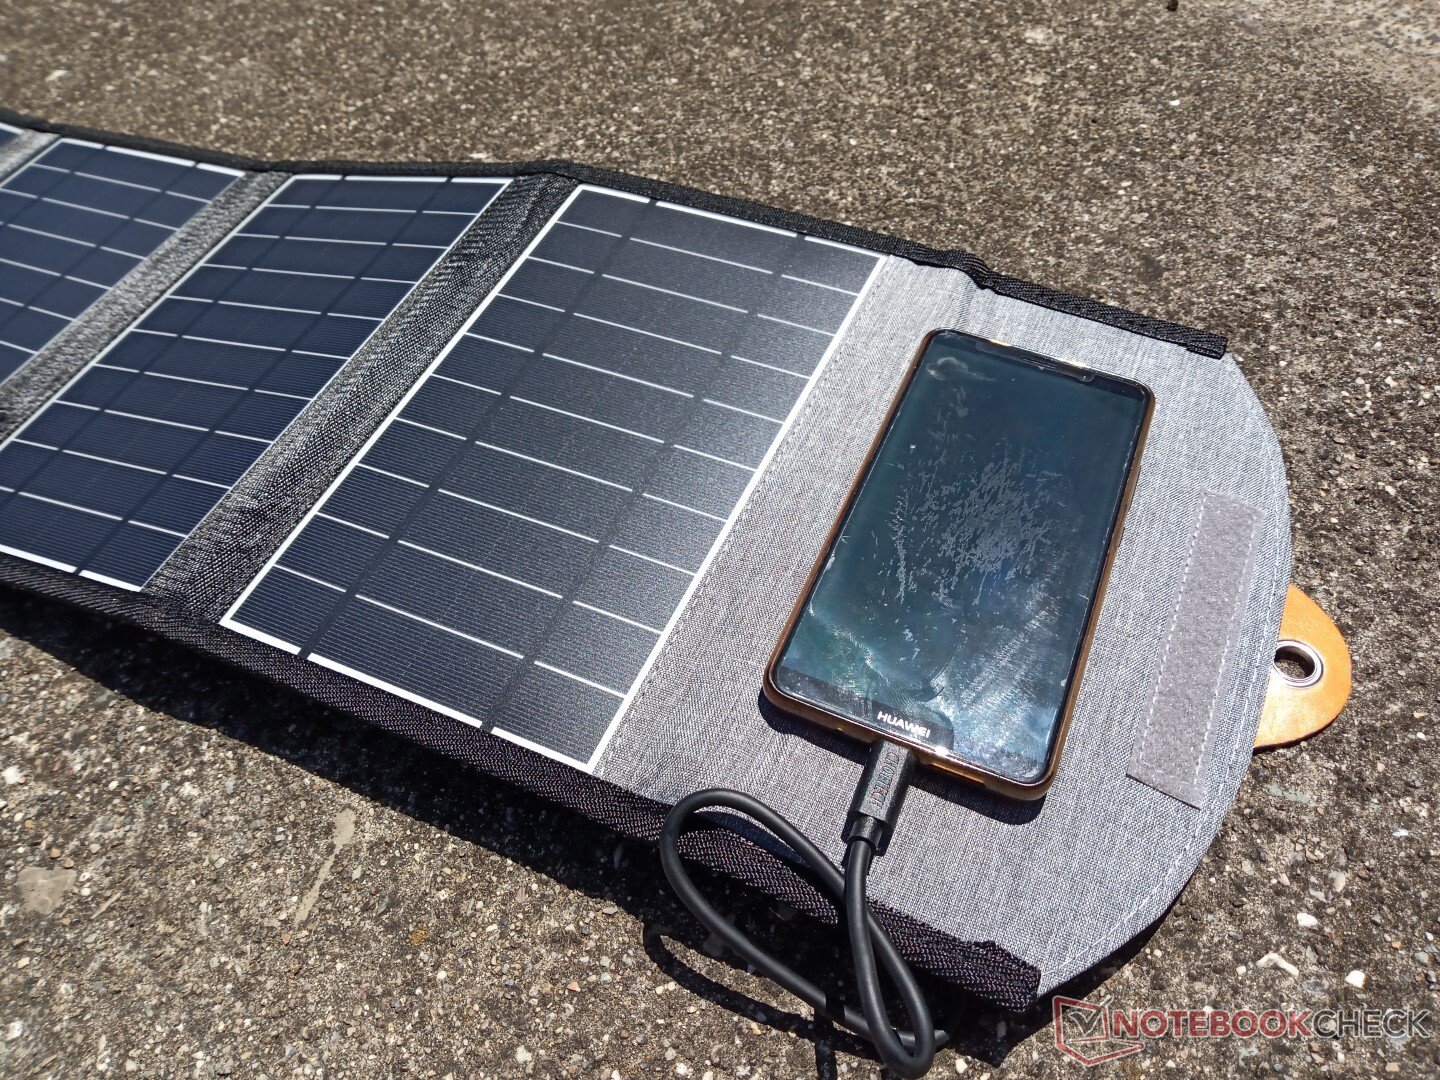 Fumble price Well educated Tentamos carregar nosso smartphone com um carregador de energia solar  dobrável de 22 W. Levou dias - NotebookCheck.net News